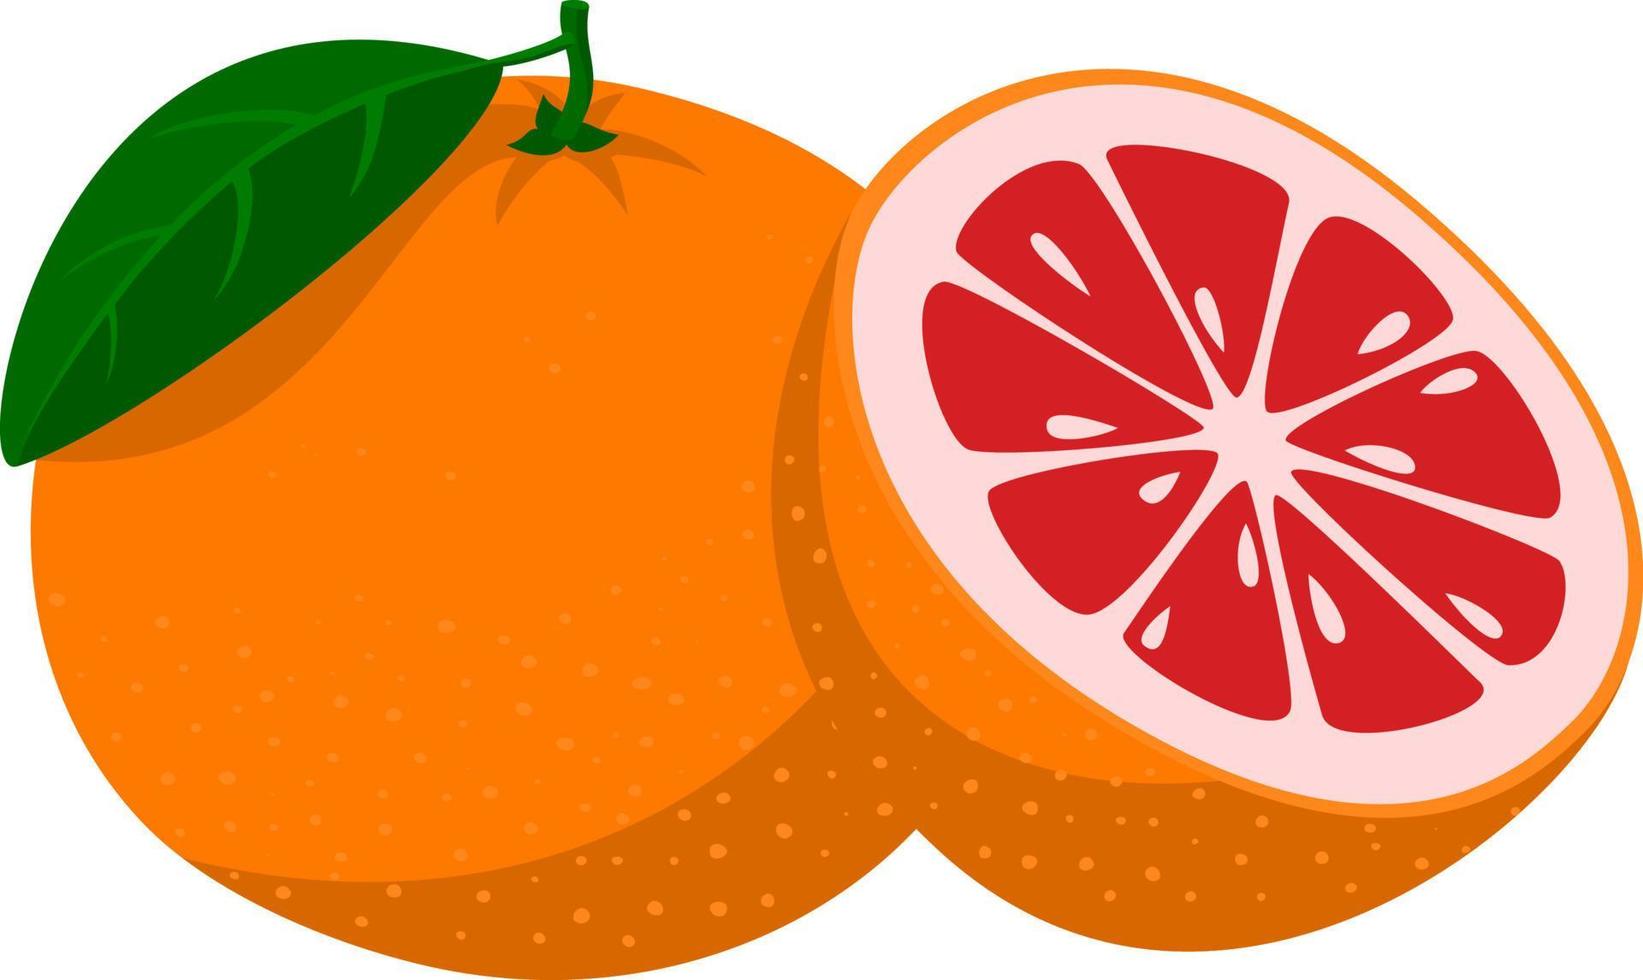 pomelo fresco. frutos de pomelo enteros y un pomelo cortado por la mitad. estilo de dibujos animados ilustración vectorial aislada en un fondo blanco vector